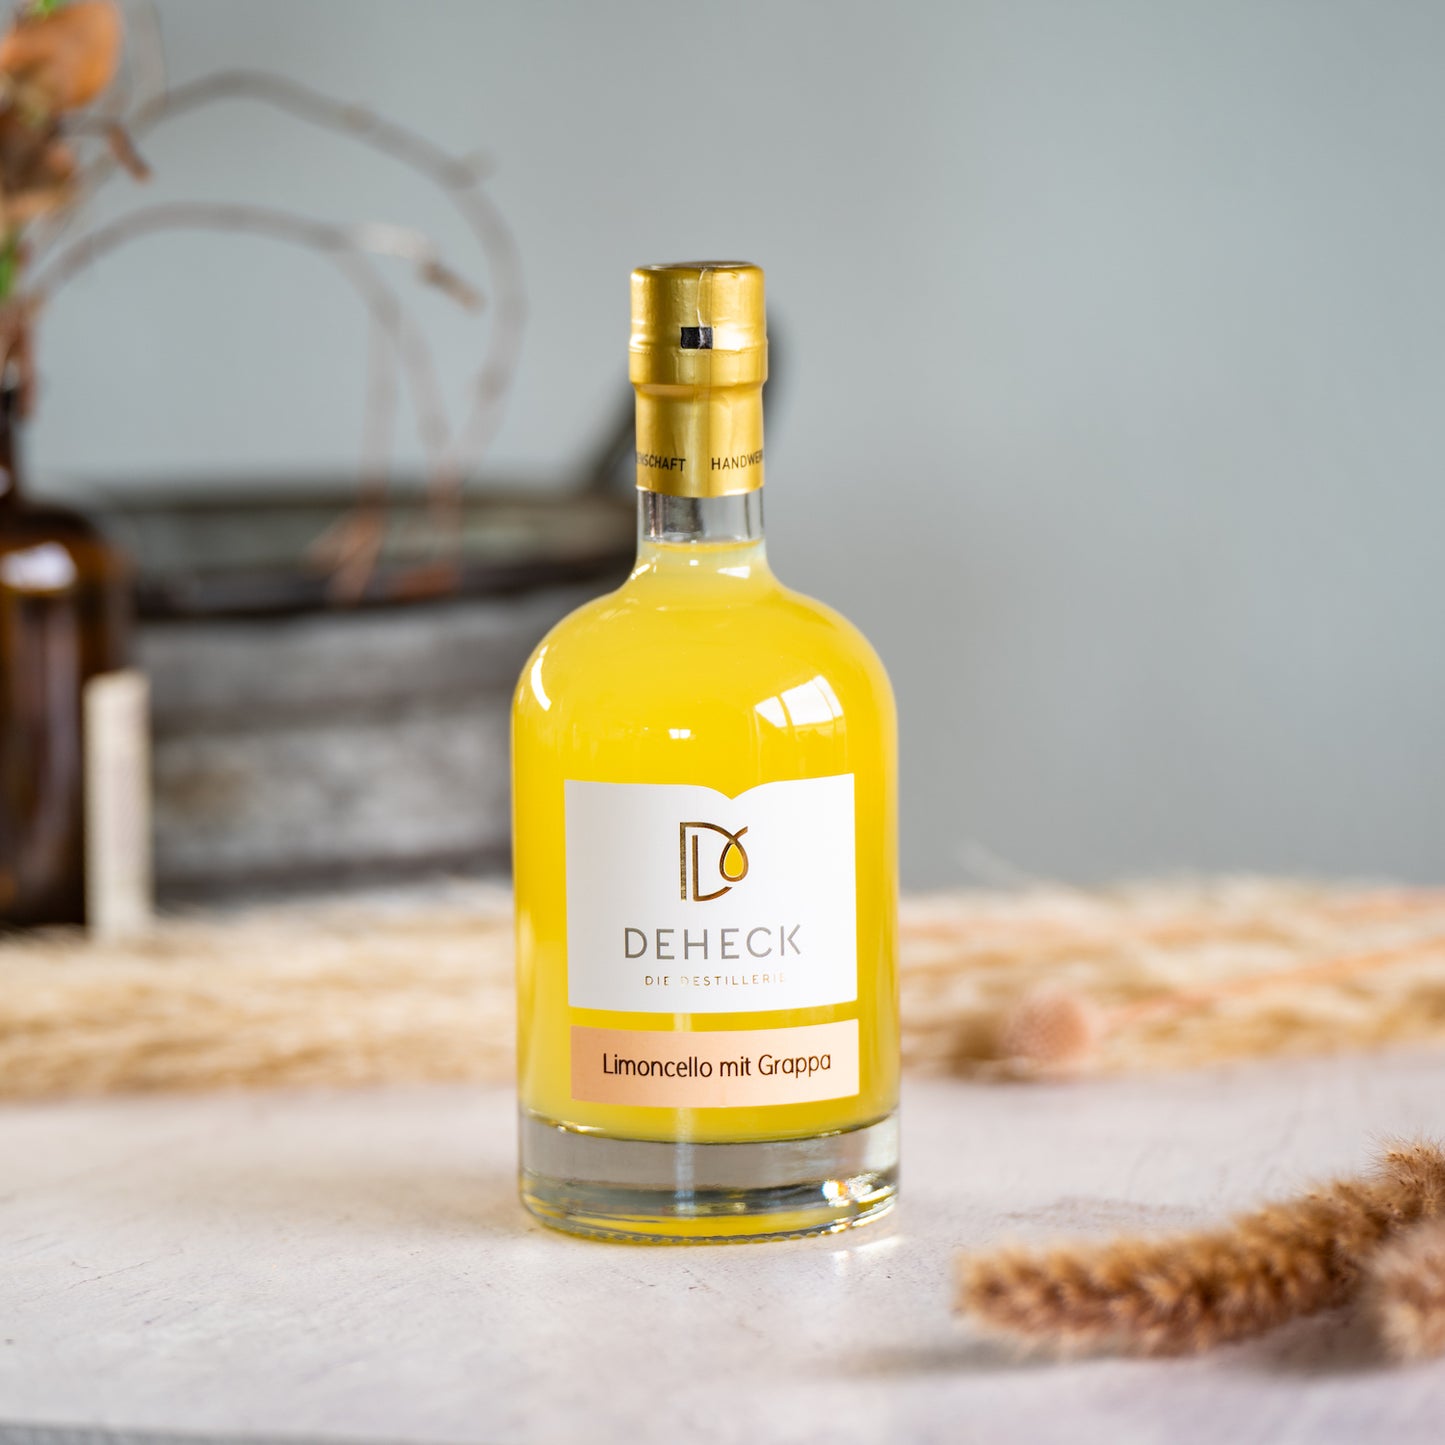 500 ml Flasche vom Limoncello mit 10% Grappa verfeinert, gemacht von der Destillerie Deheck. 